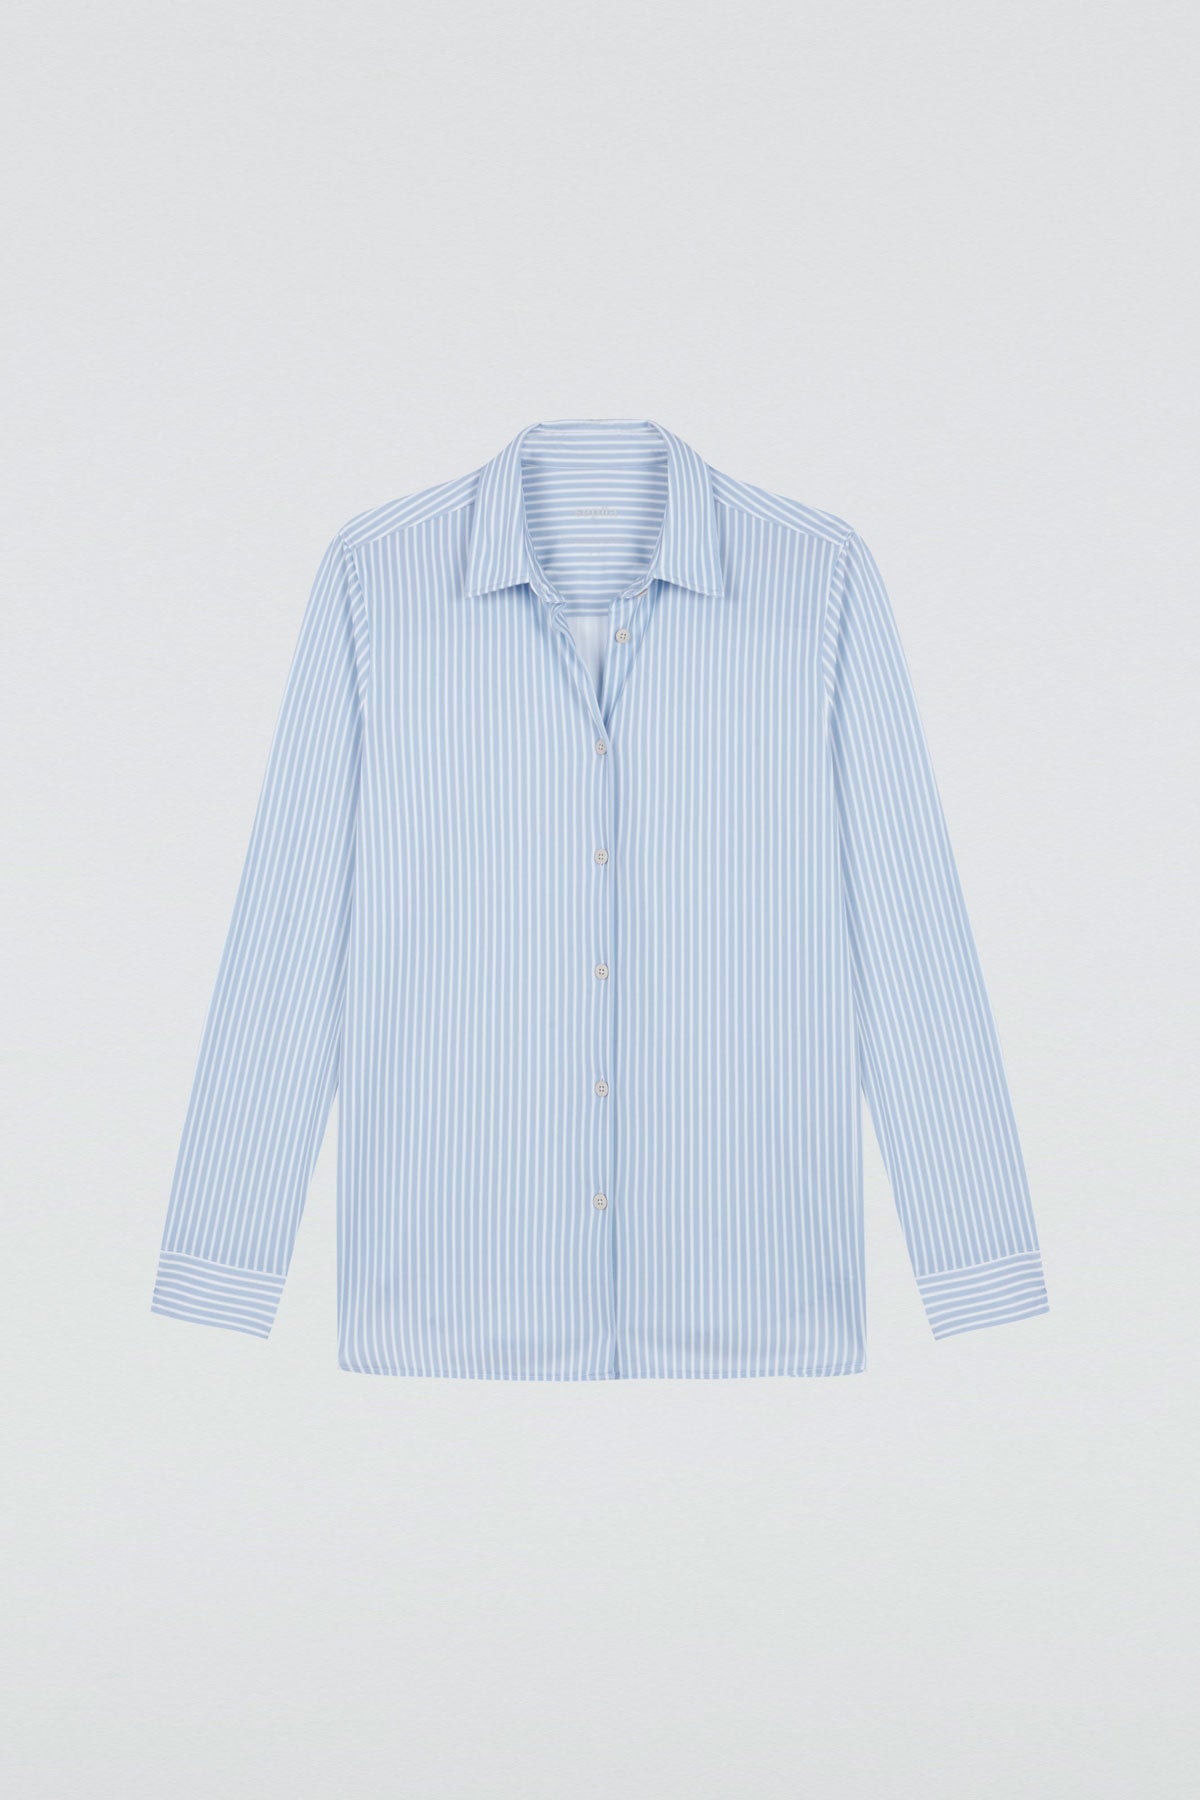 Camisa rayas azules oversize de Sepiia, elegante y resistente a manchas y arrugas. Foto plano